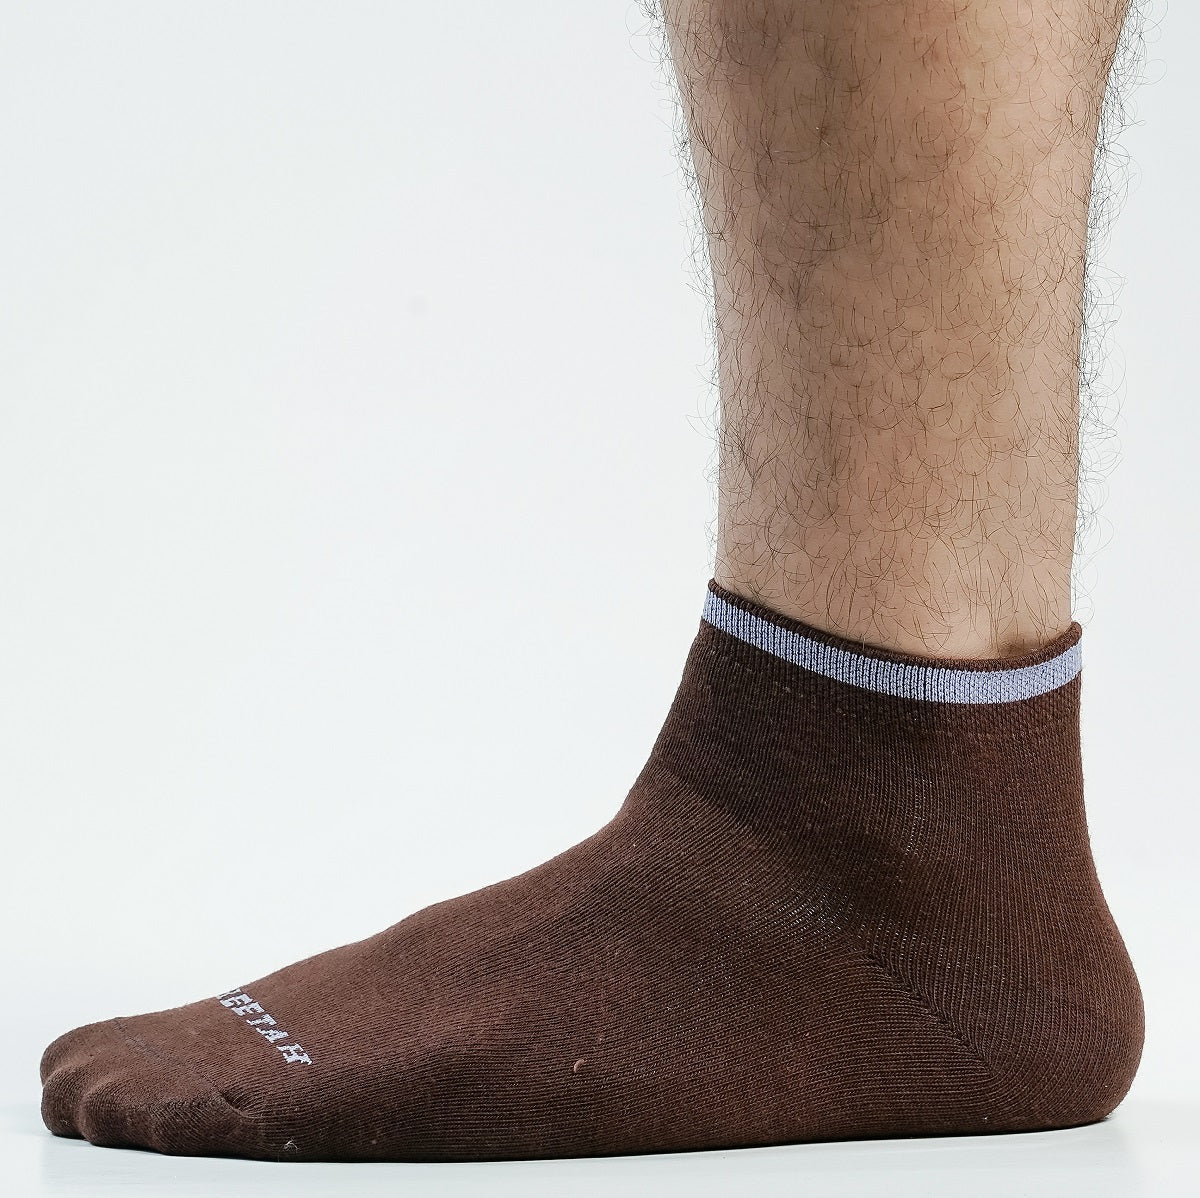 Catstep Ankle Socks For Men